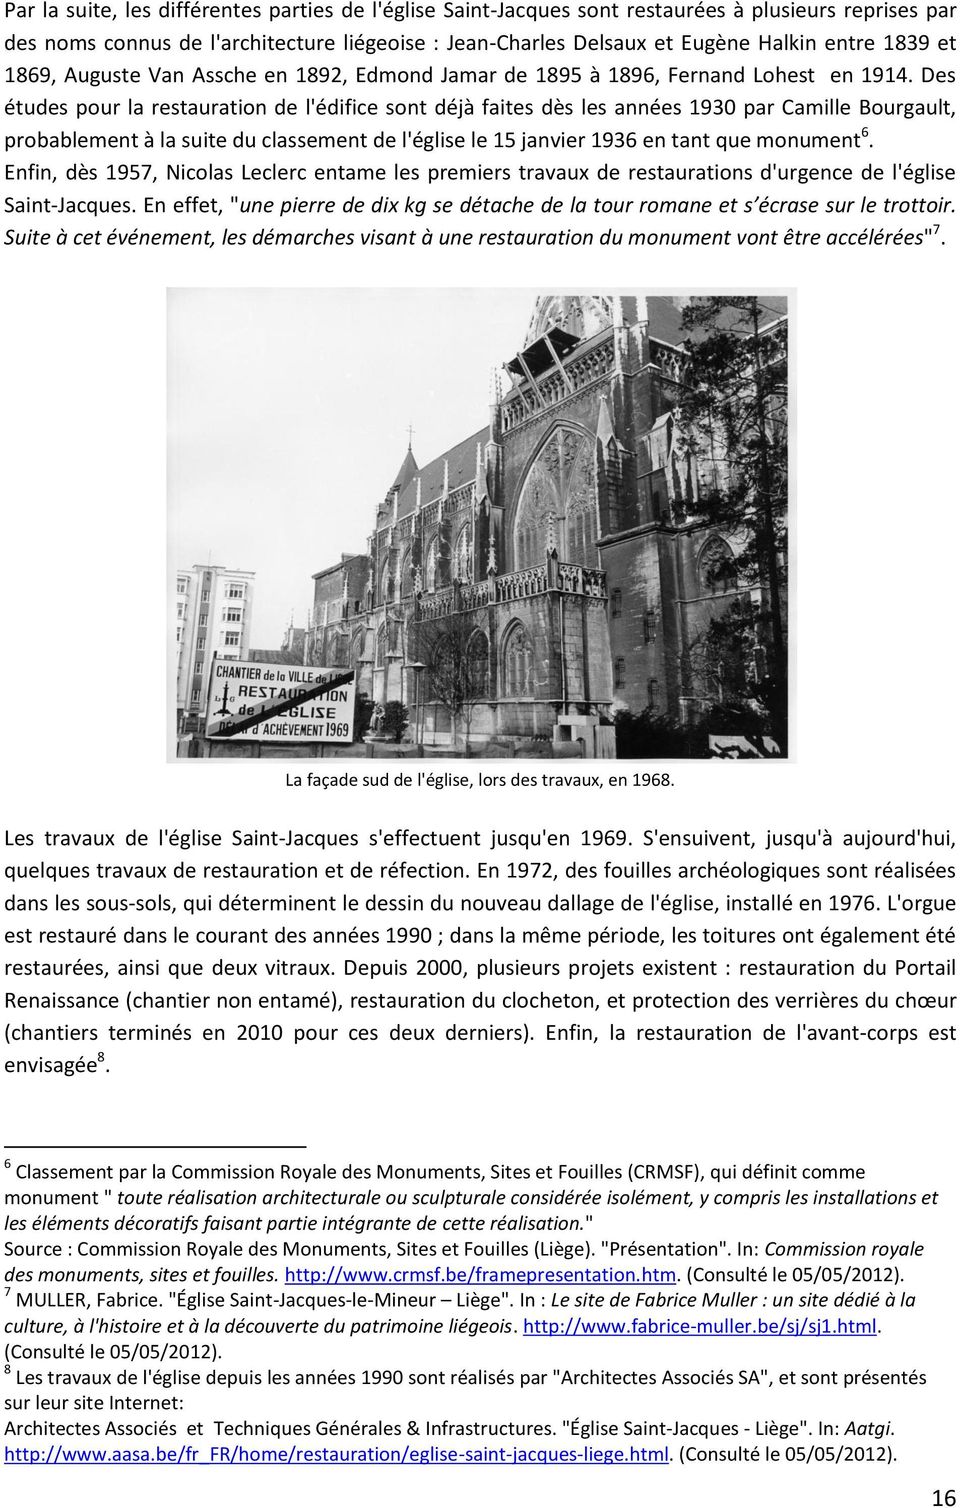 Des études pour la restauration de l'édifice sont déjà faites dès les années 1930 par Camille Bourgault, probablement à la suite du classement de l'église le 15 janvier 1936 en tant que monument 6.